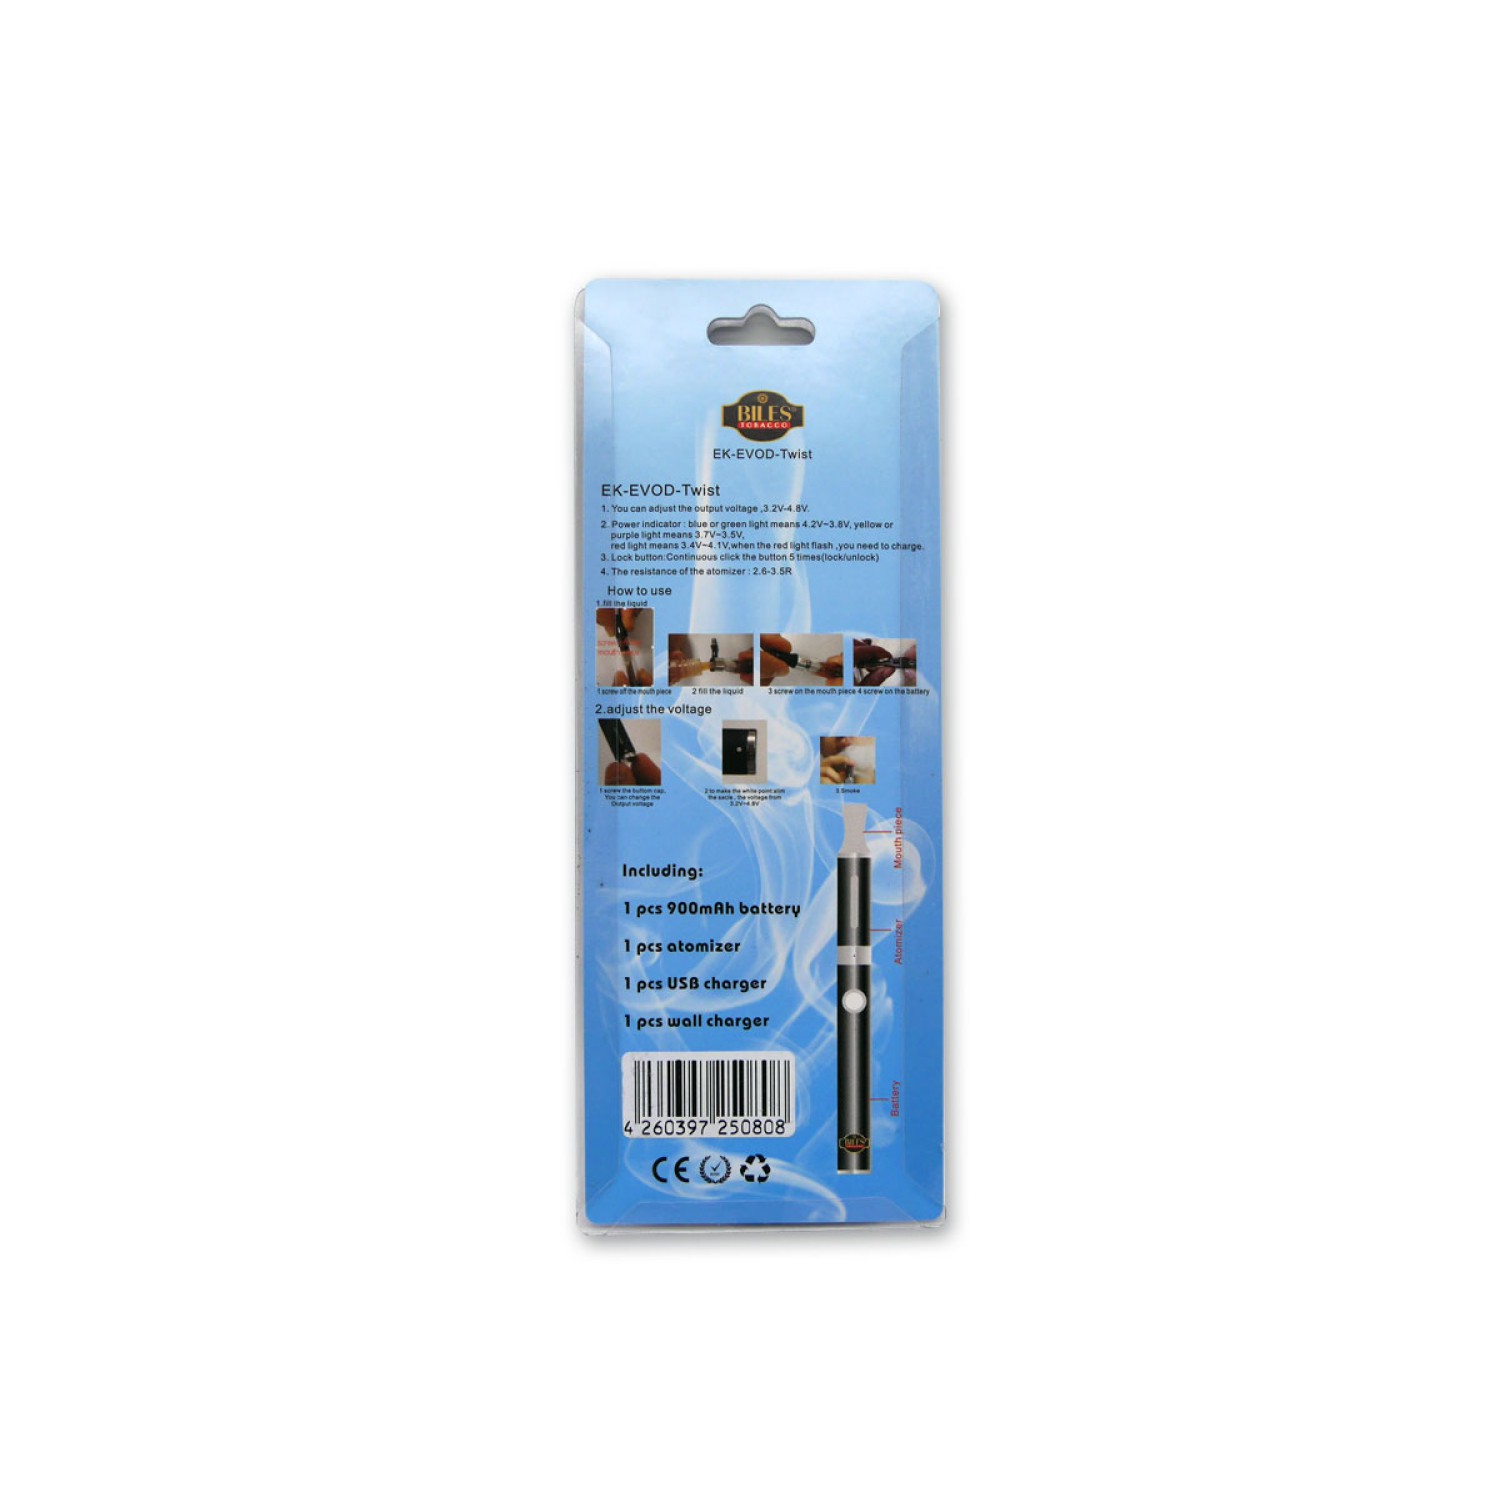 Biles - E-Zigarette - Lila - Elektronische Zigarette - inkl. Akku und Ladegerät